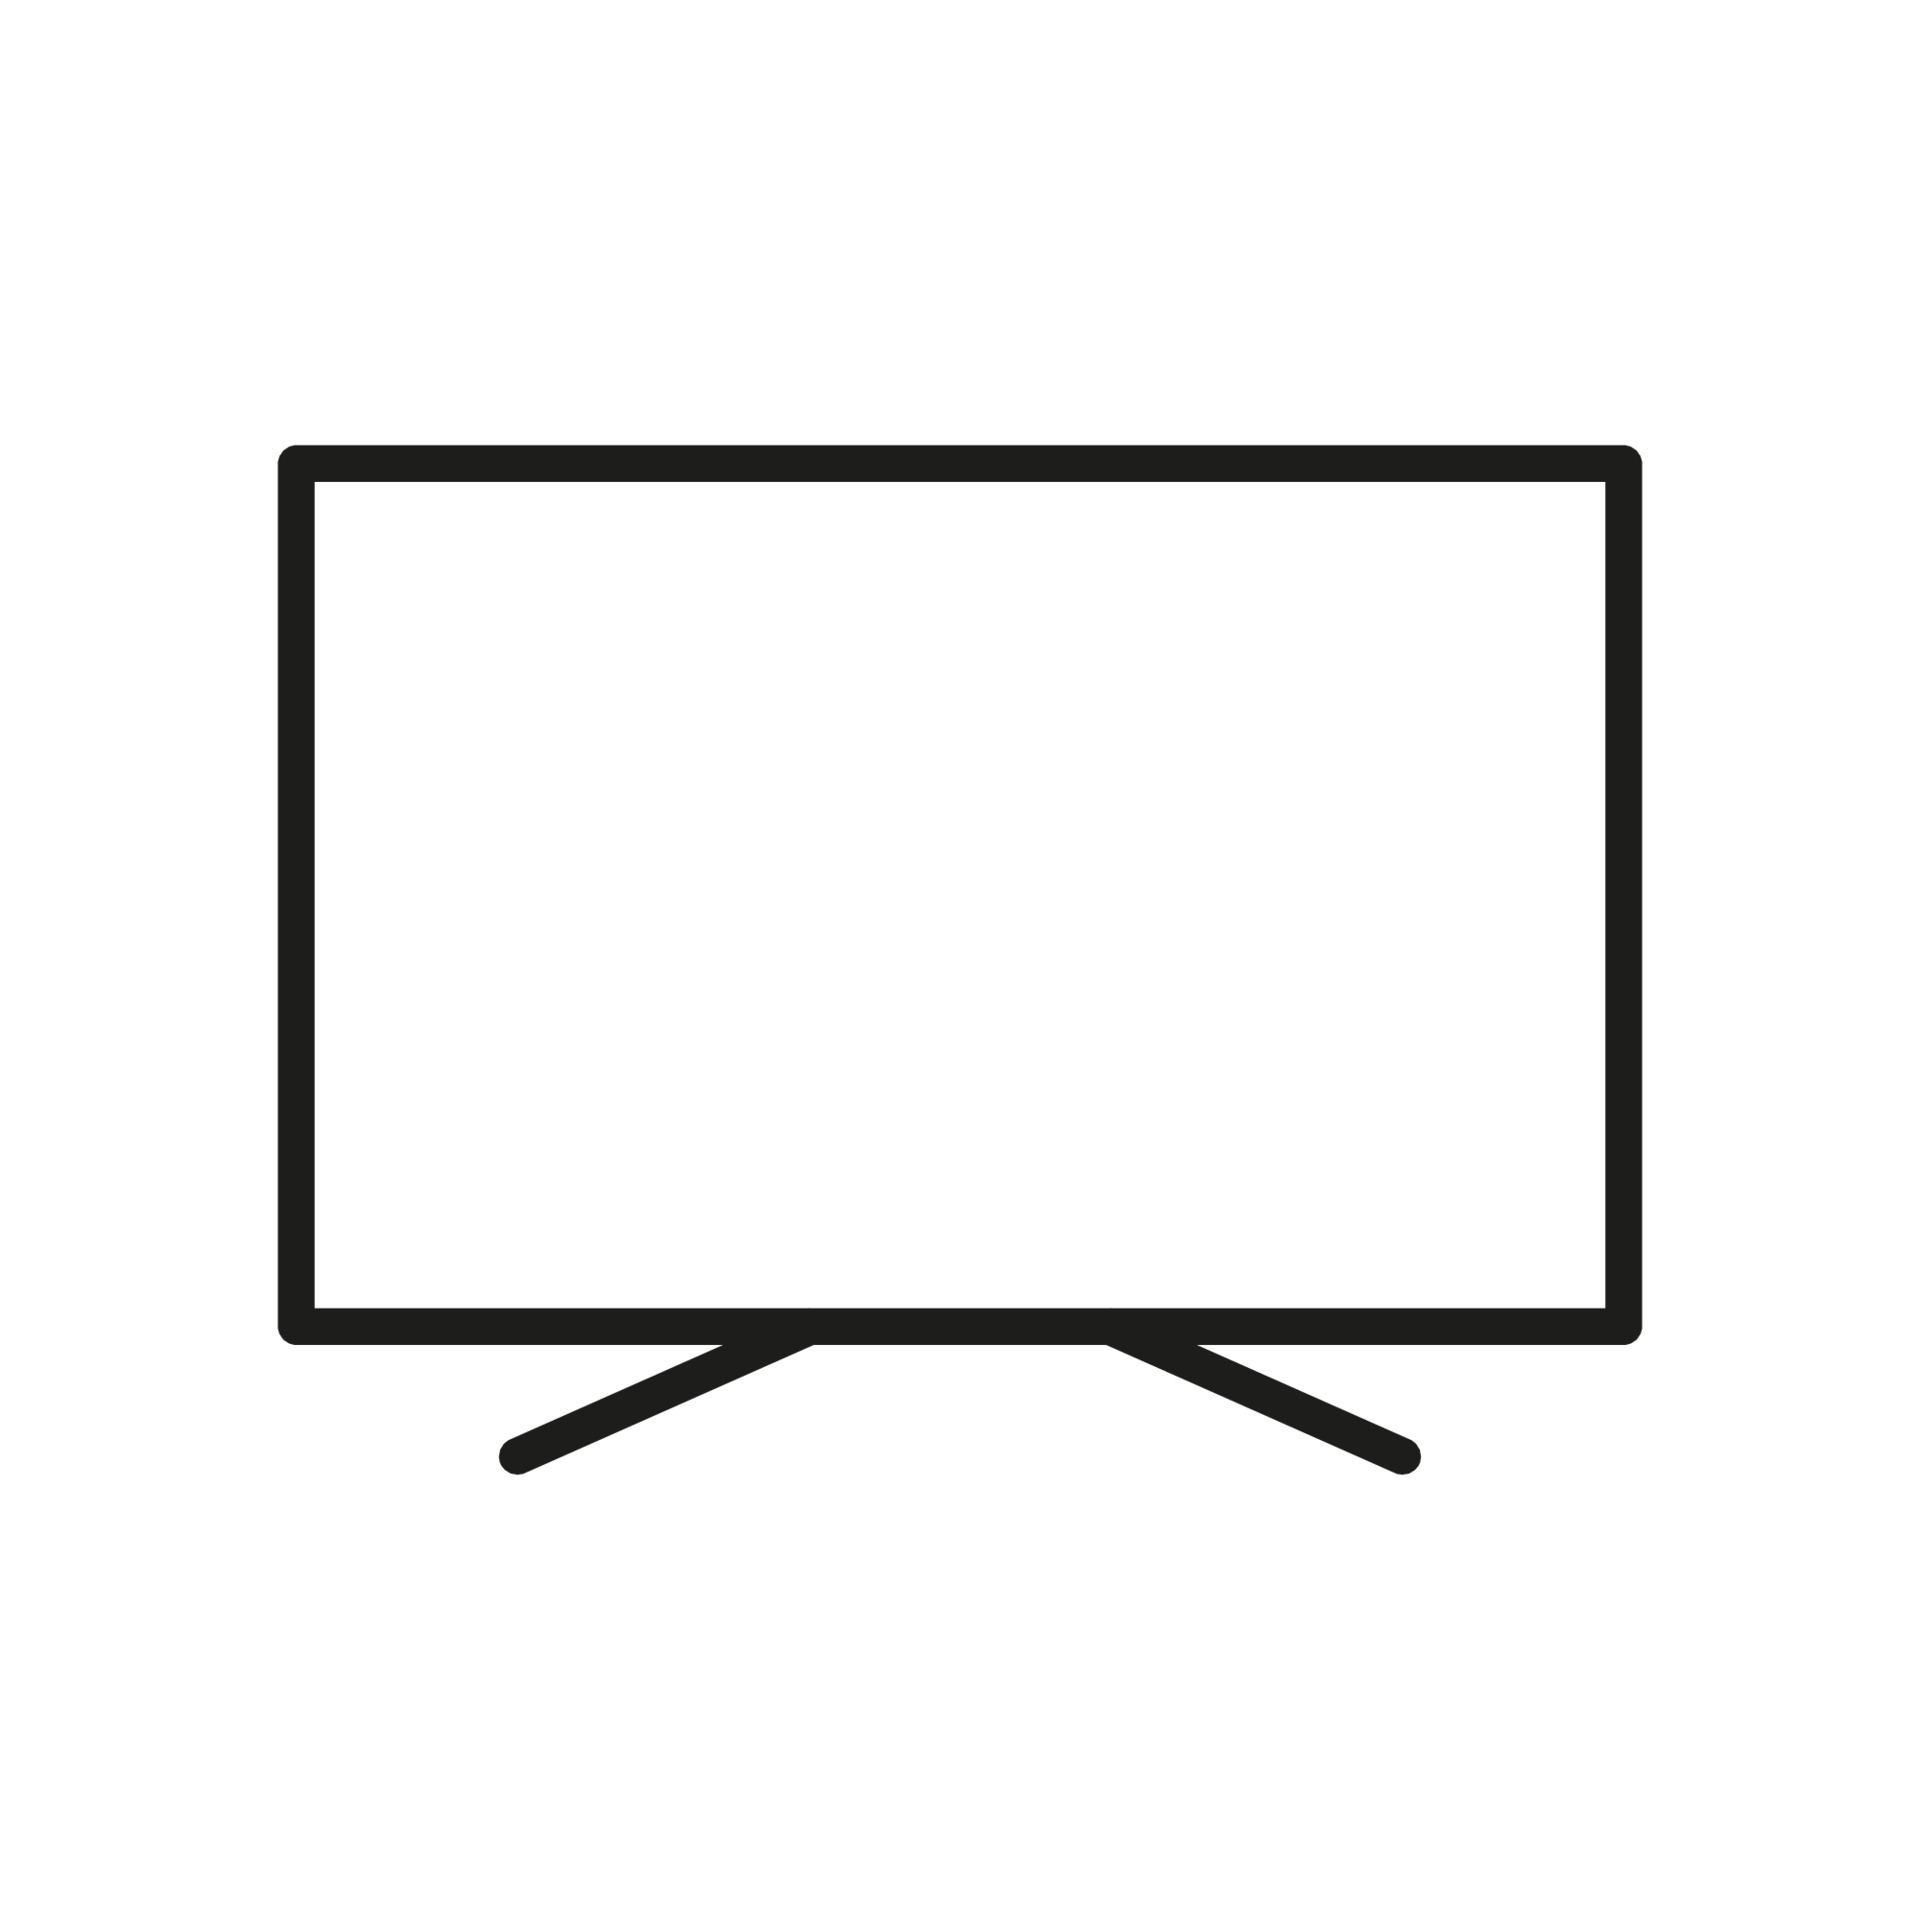 TV white noise on lcd screen Stock Illustration